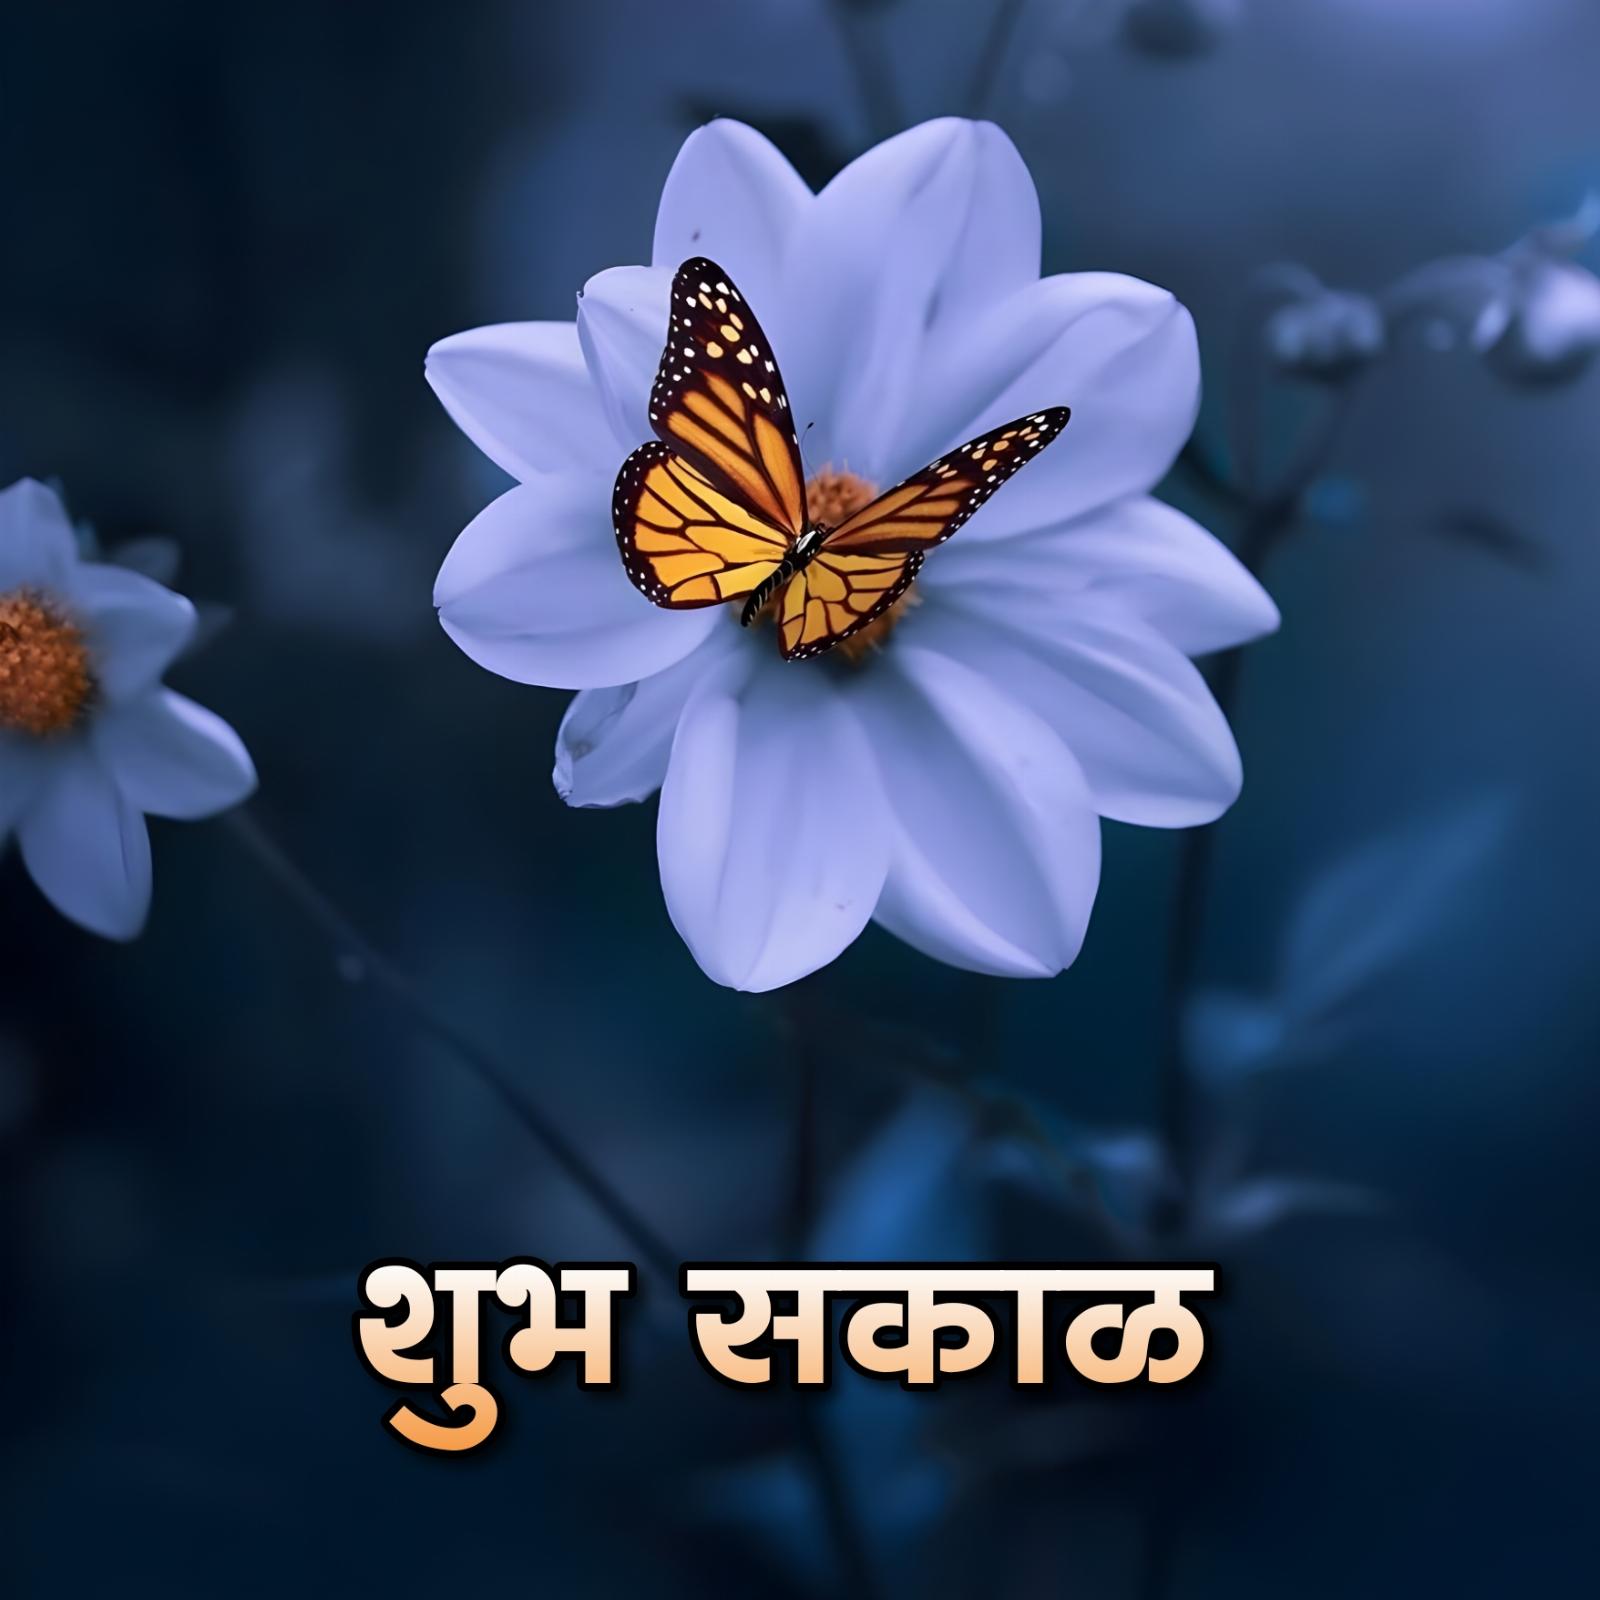 Shubh Sakal Flower Wallpaper Download